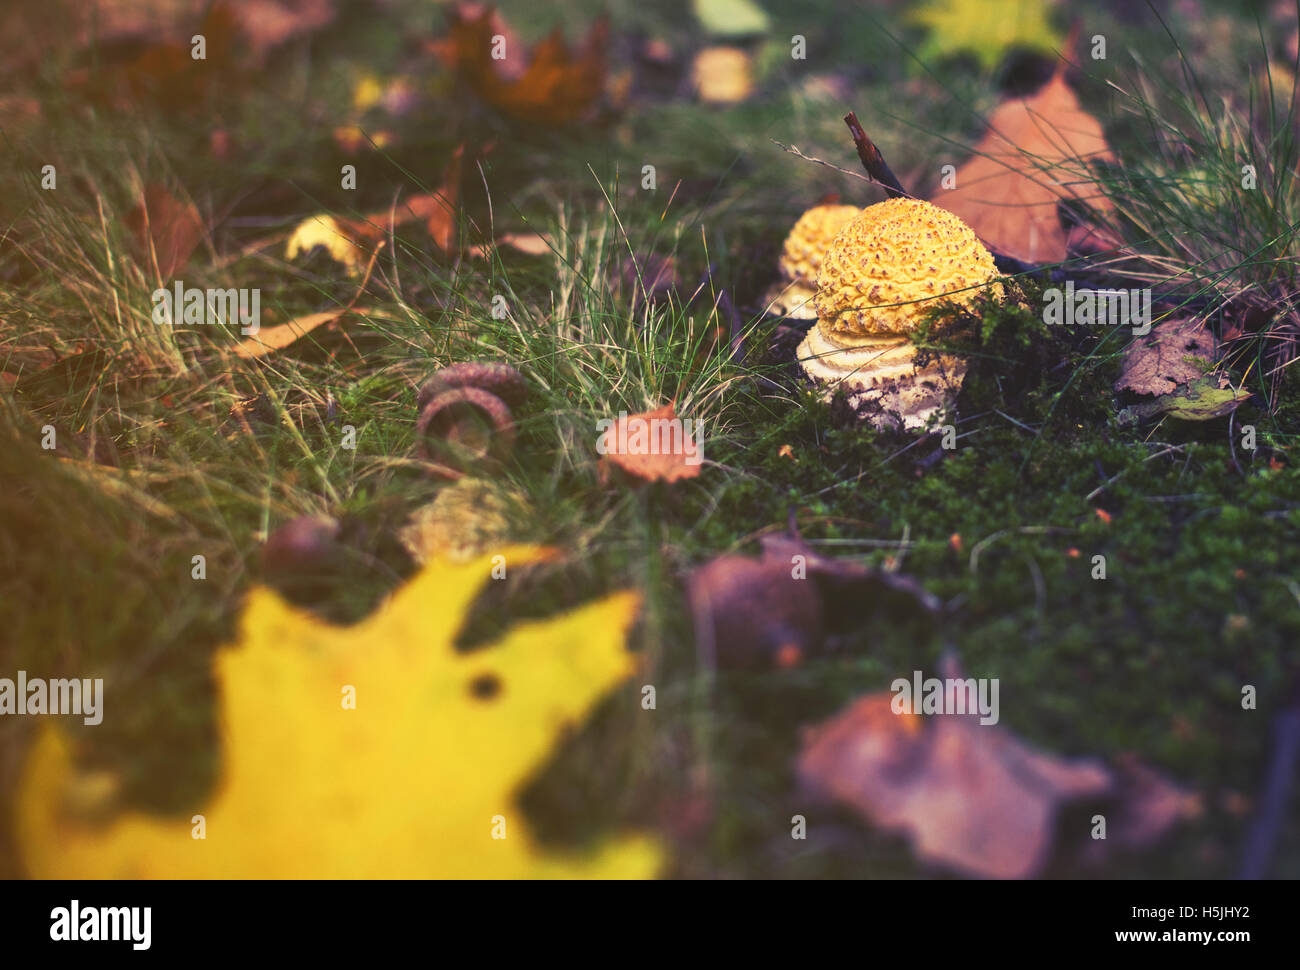 yellow mashroom with leaf, autumn background Stock Photo